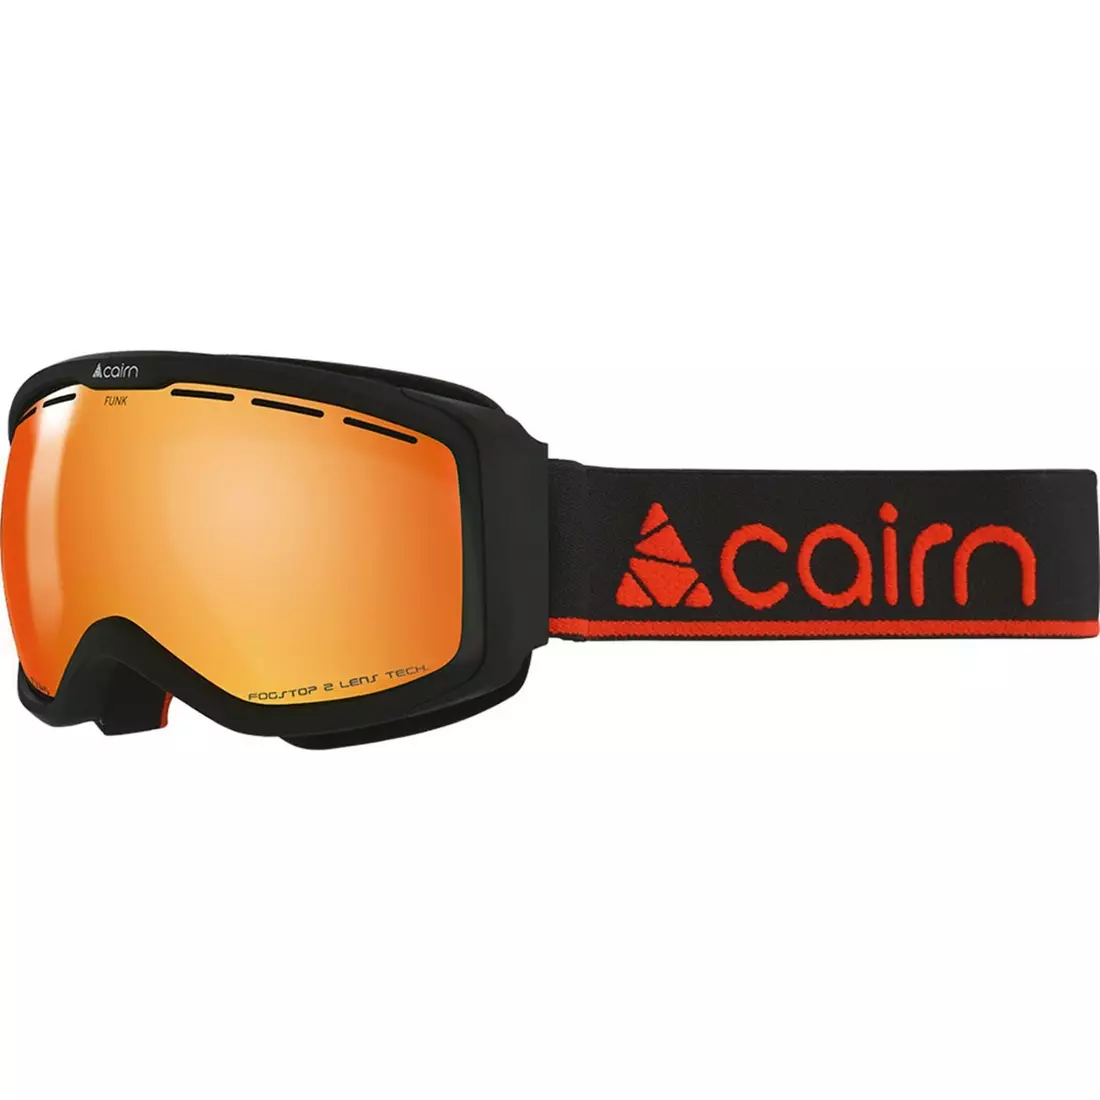 CAIRN Junior Ski-/Snowboardbrille FUNK OTG SPX3000 IUM Mat Black Orange